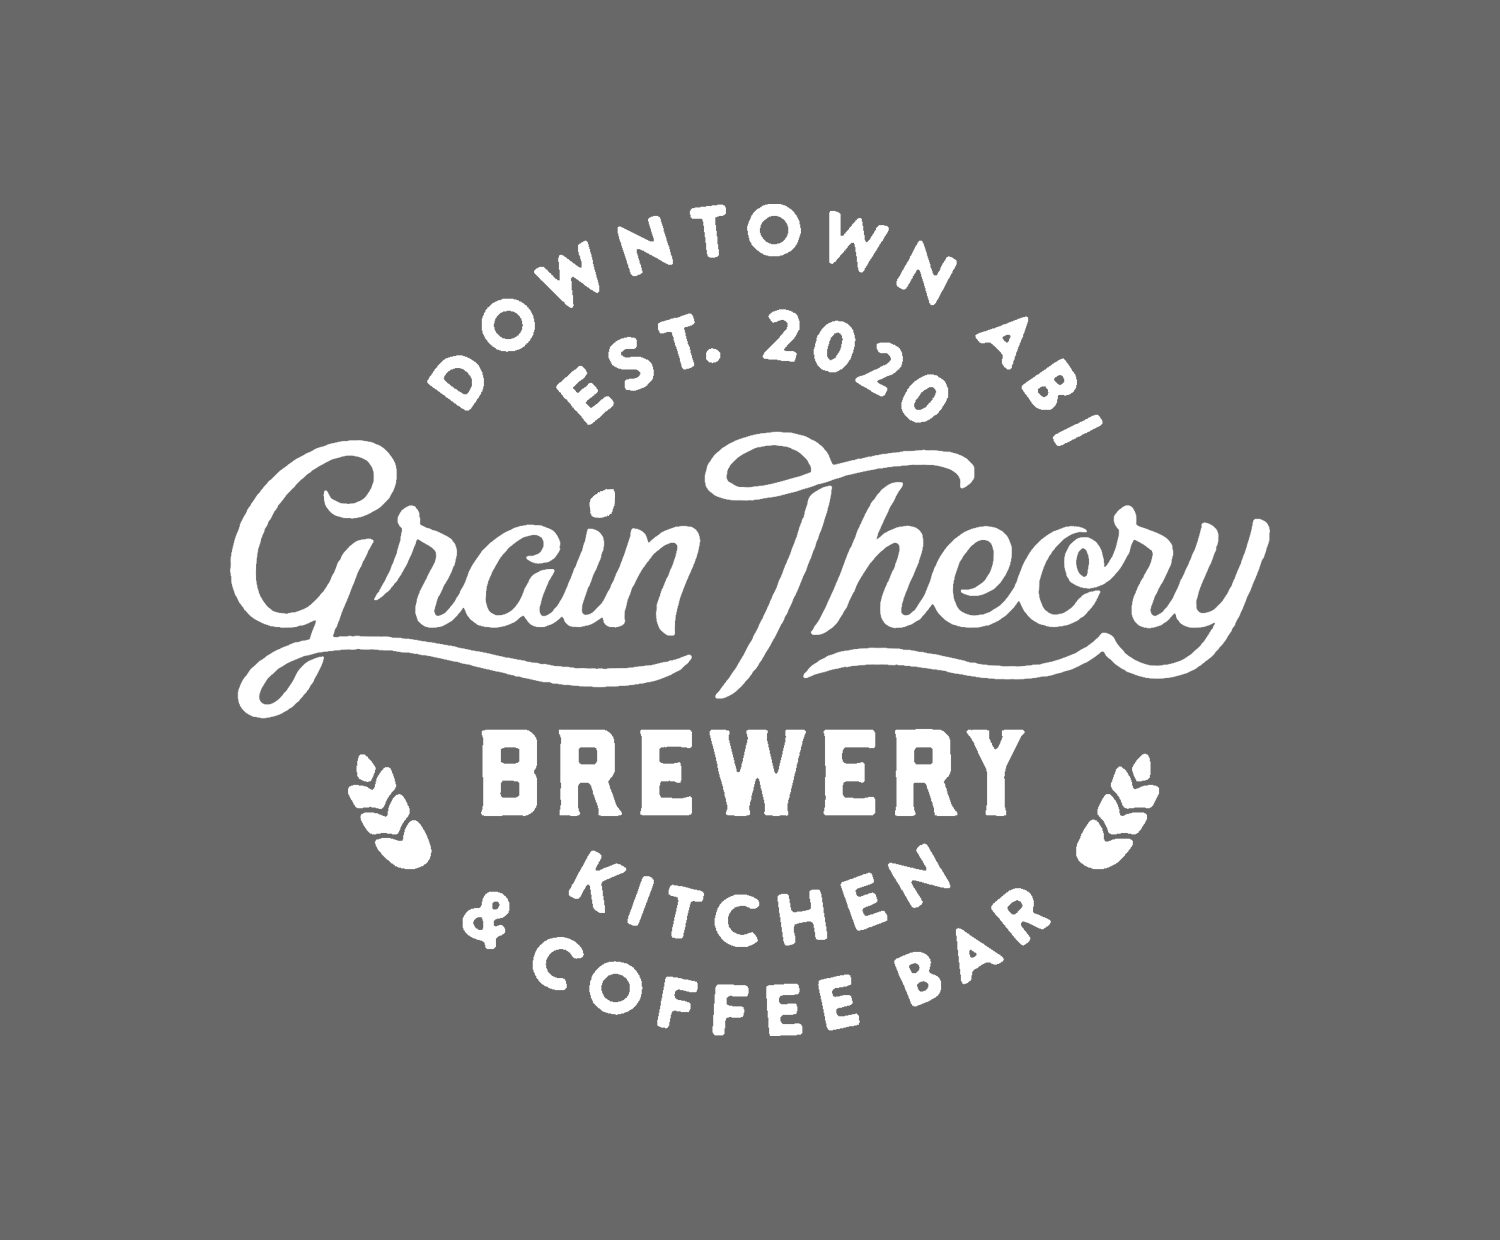 Grain Theory